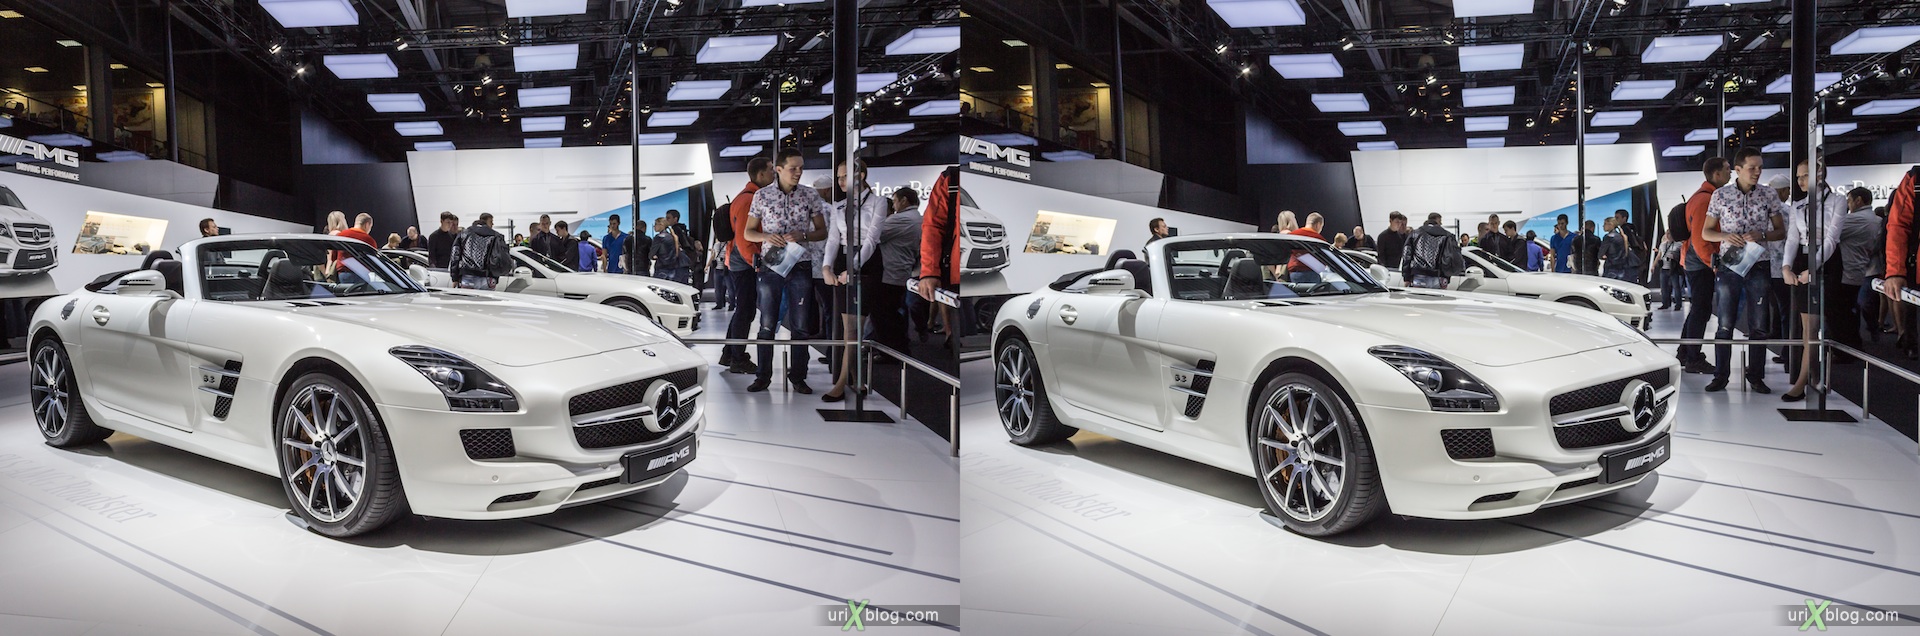 2012, Mercedes Benz AMG, Московский международный автомобильный салон, ММАС, Крокус Экспо, 3D, стереопара